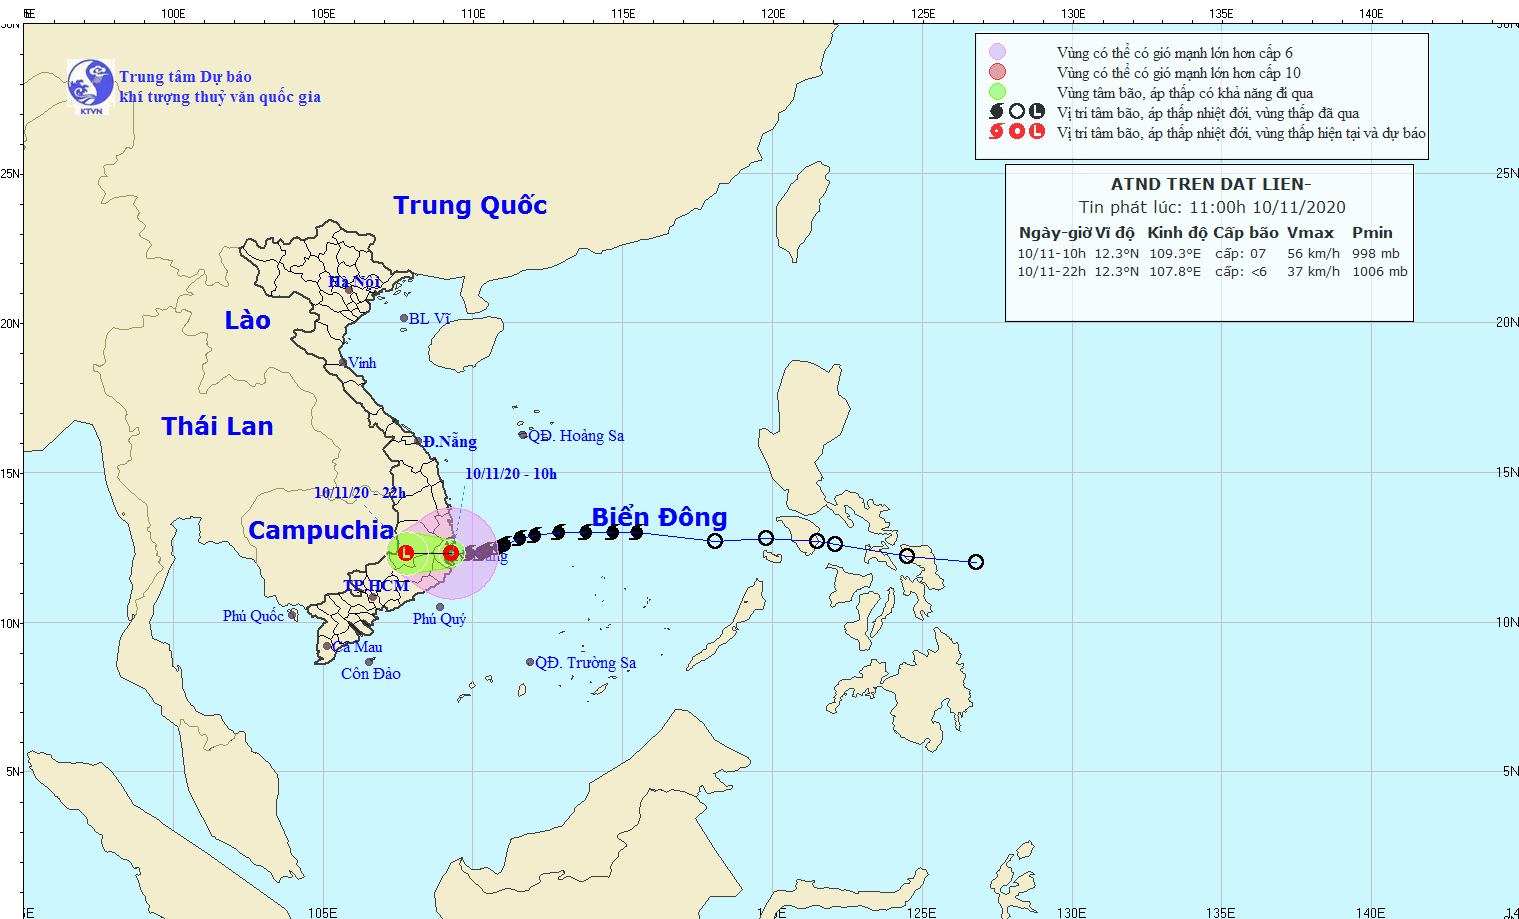 Bão số 12 suy yếu, bão số 13 dự báo có cường độ rất mạnh chuẩn bị vào biển Đông